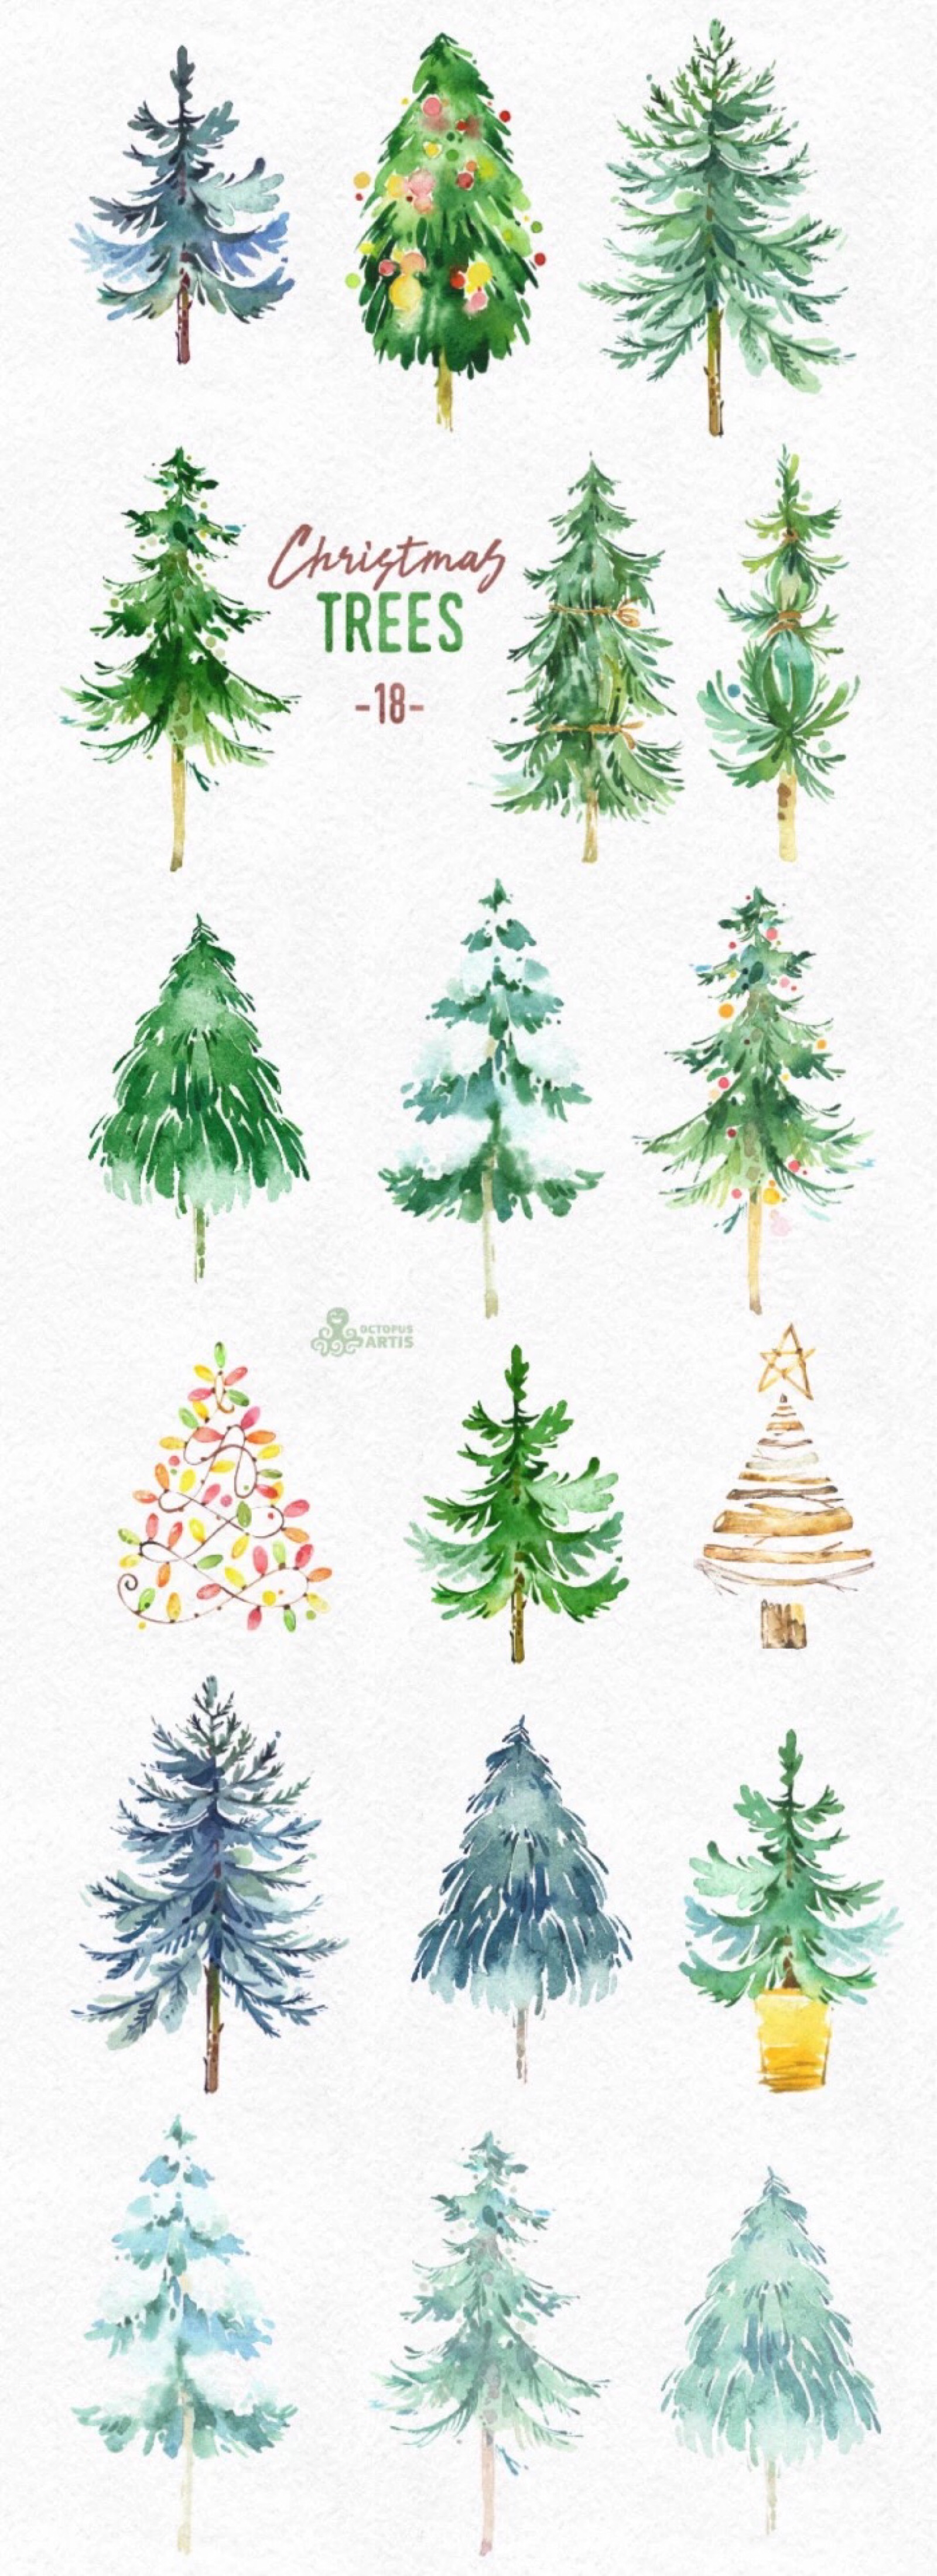 手绘圣诞树合集素材